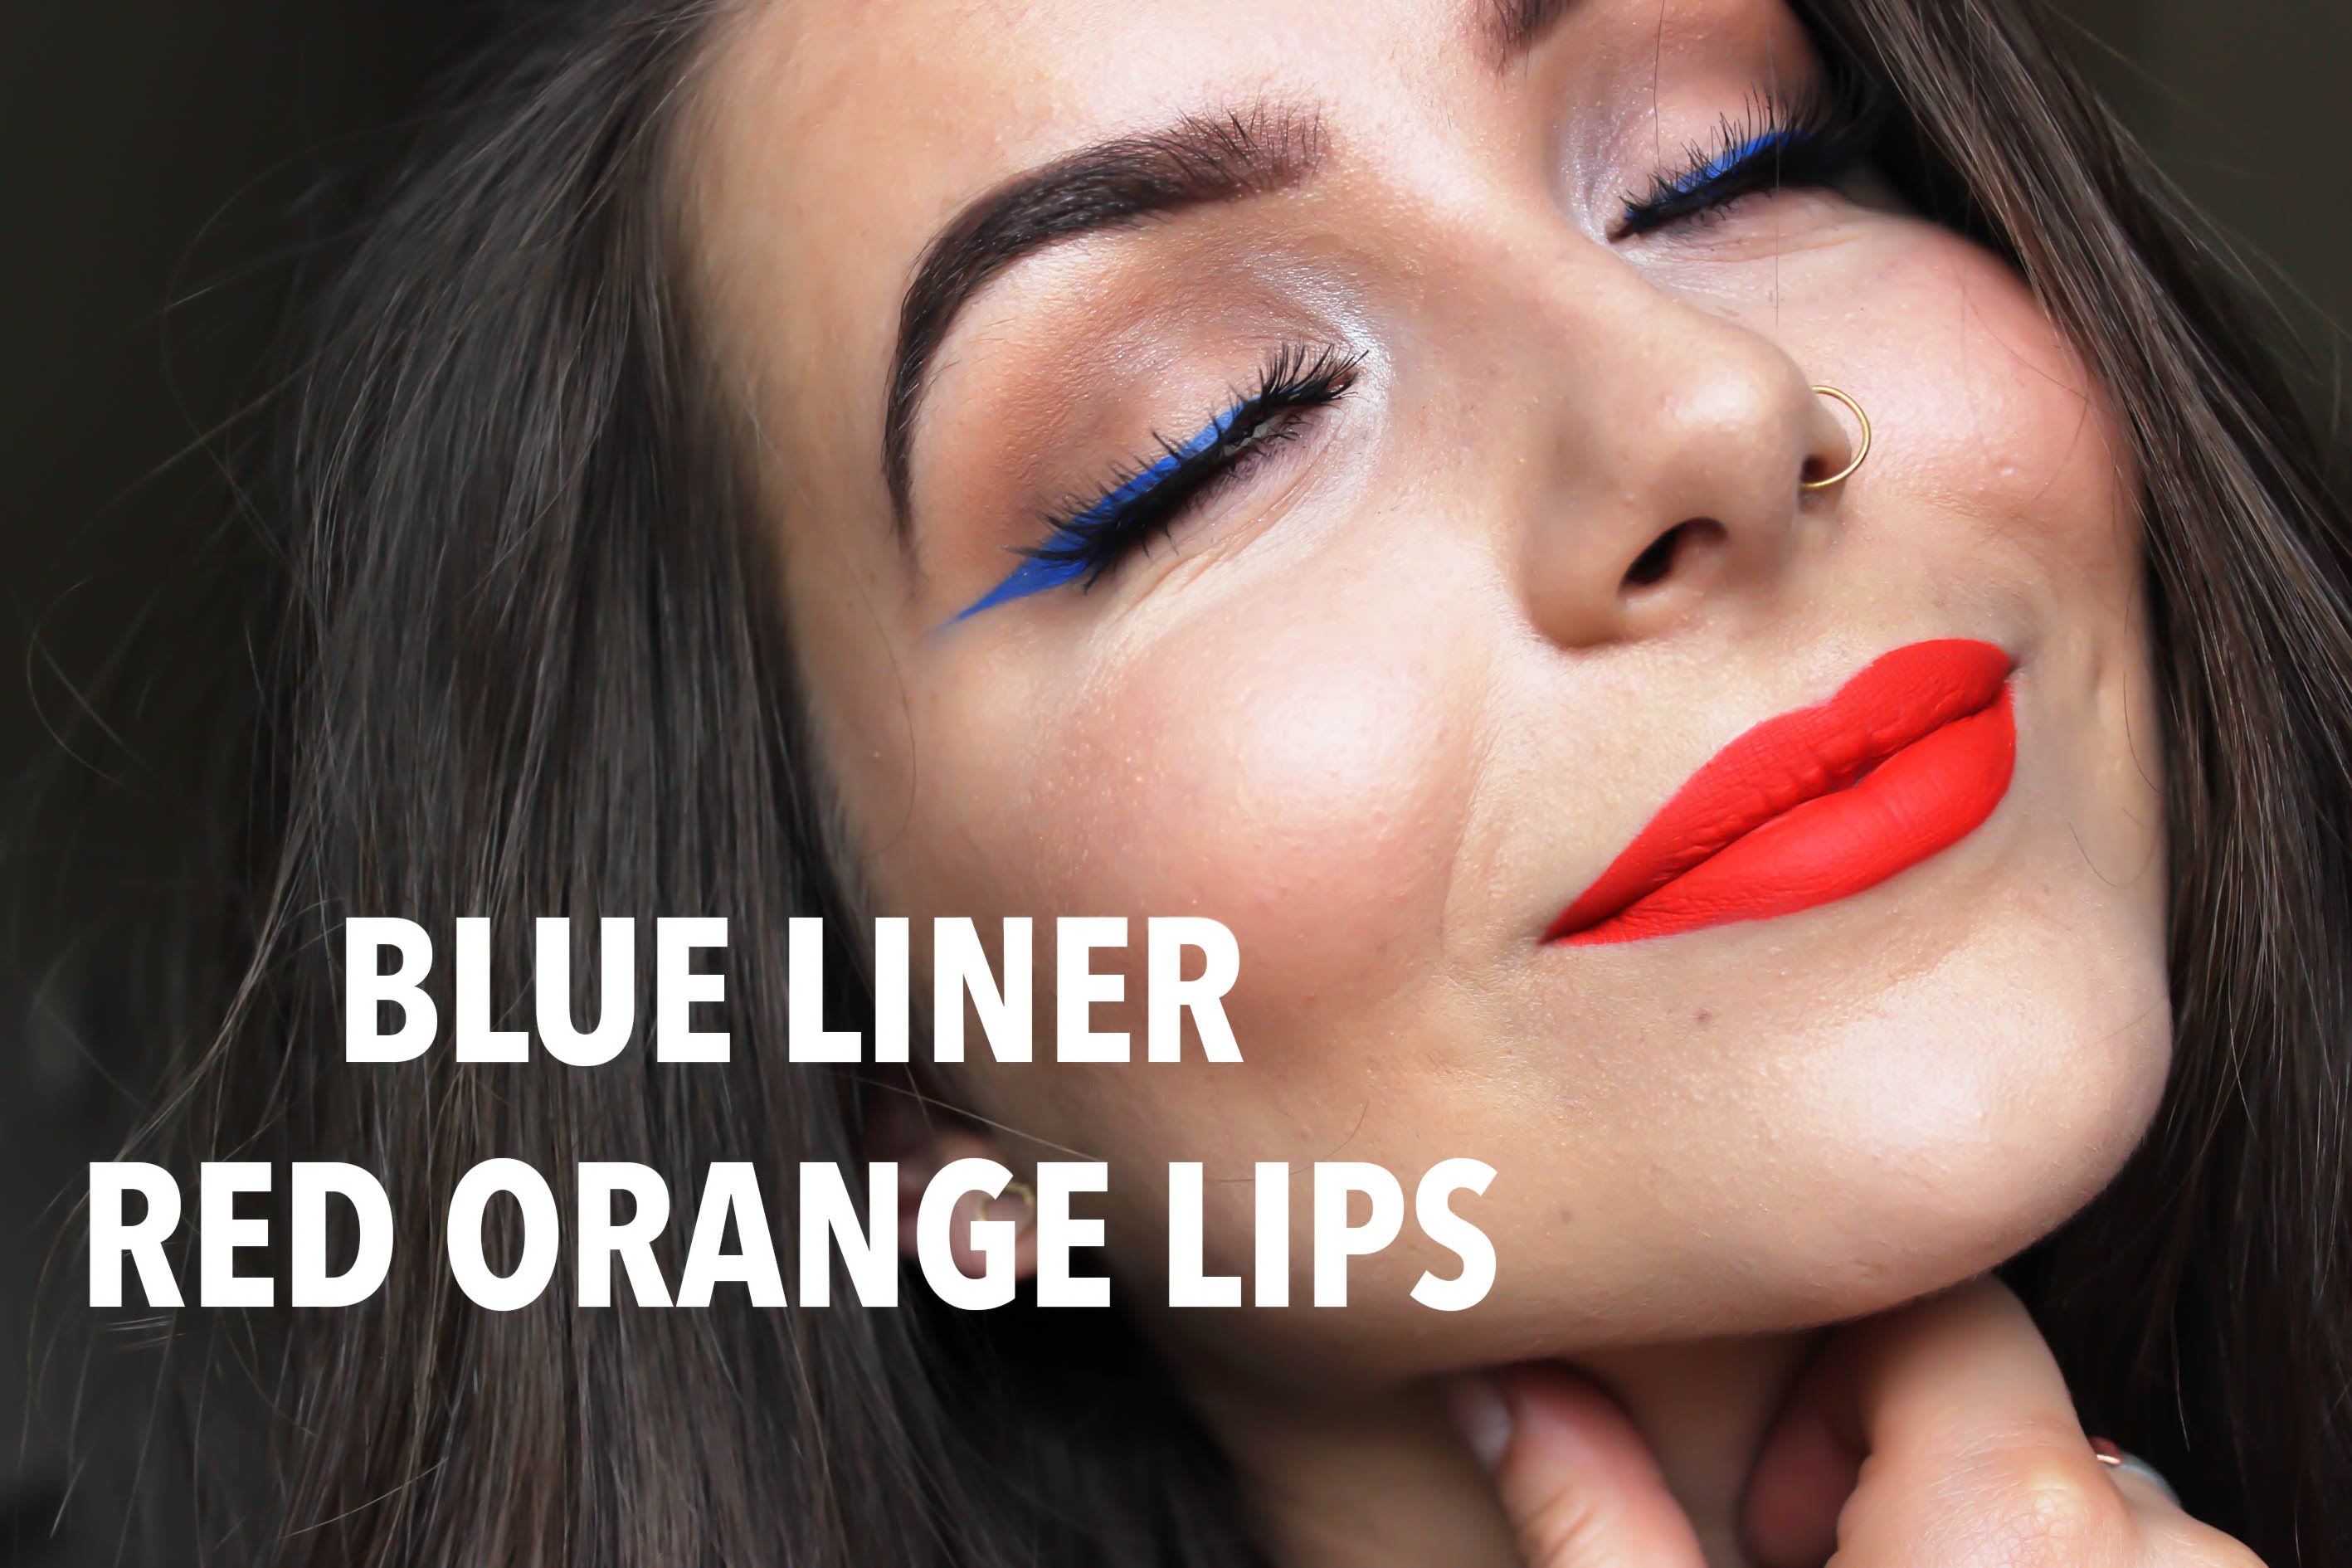 COBALT BLUE LINER & RED/ORANGE LIPS MAKEUP TUTORIAL - YouTube